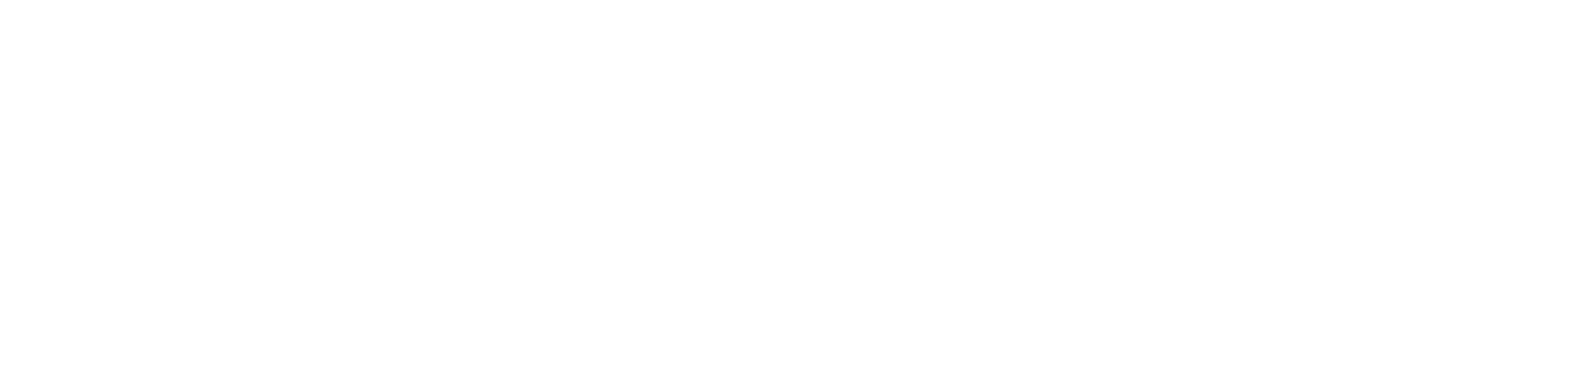 Yageo Logo groß für dunkle Hintergründe (transparentes PNG)